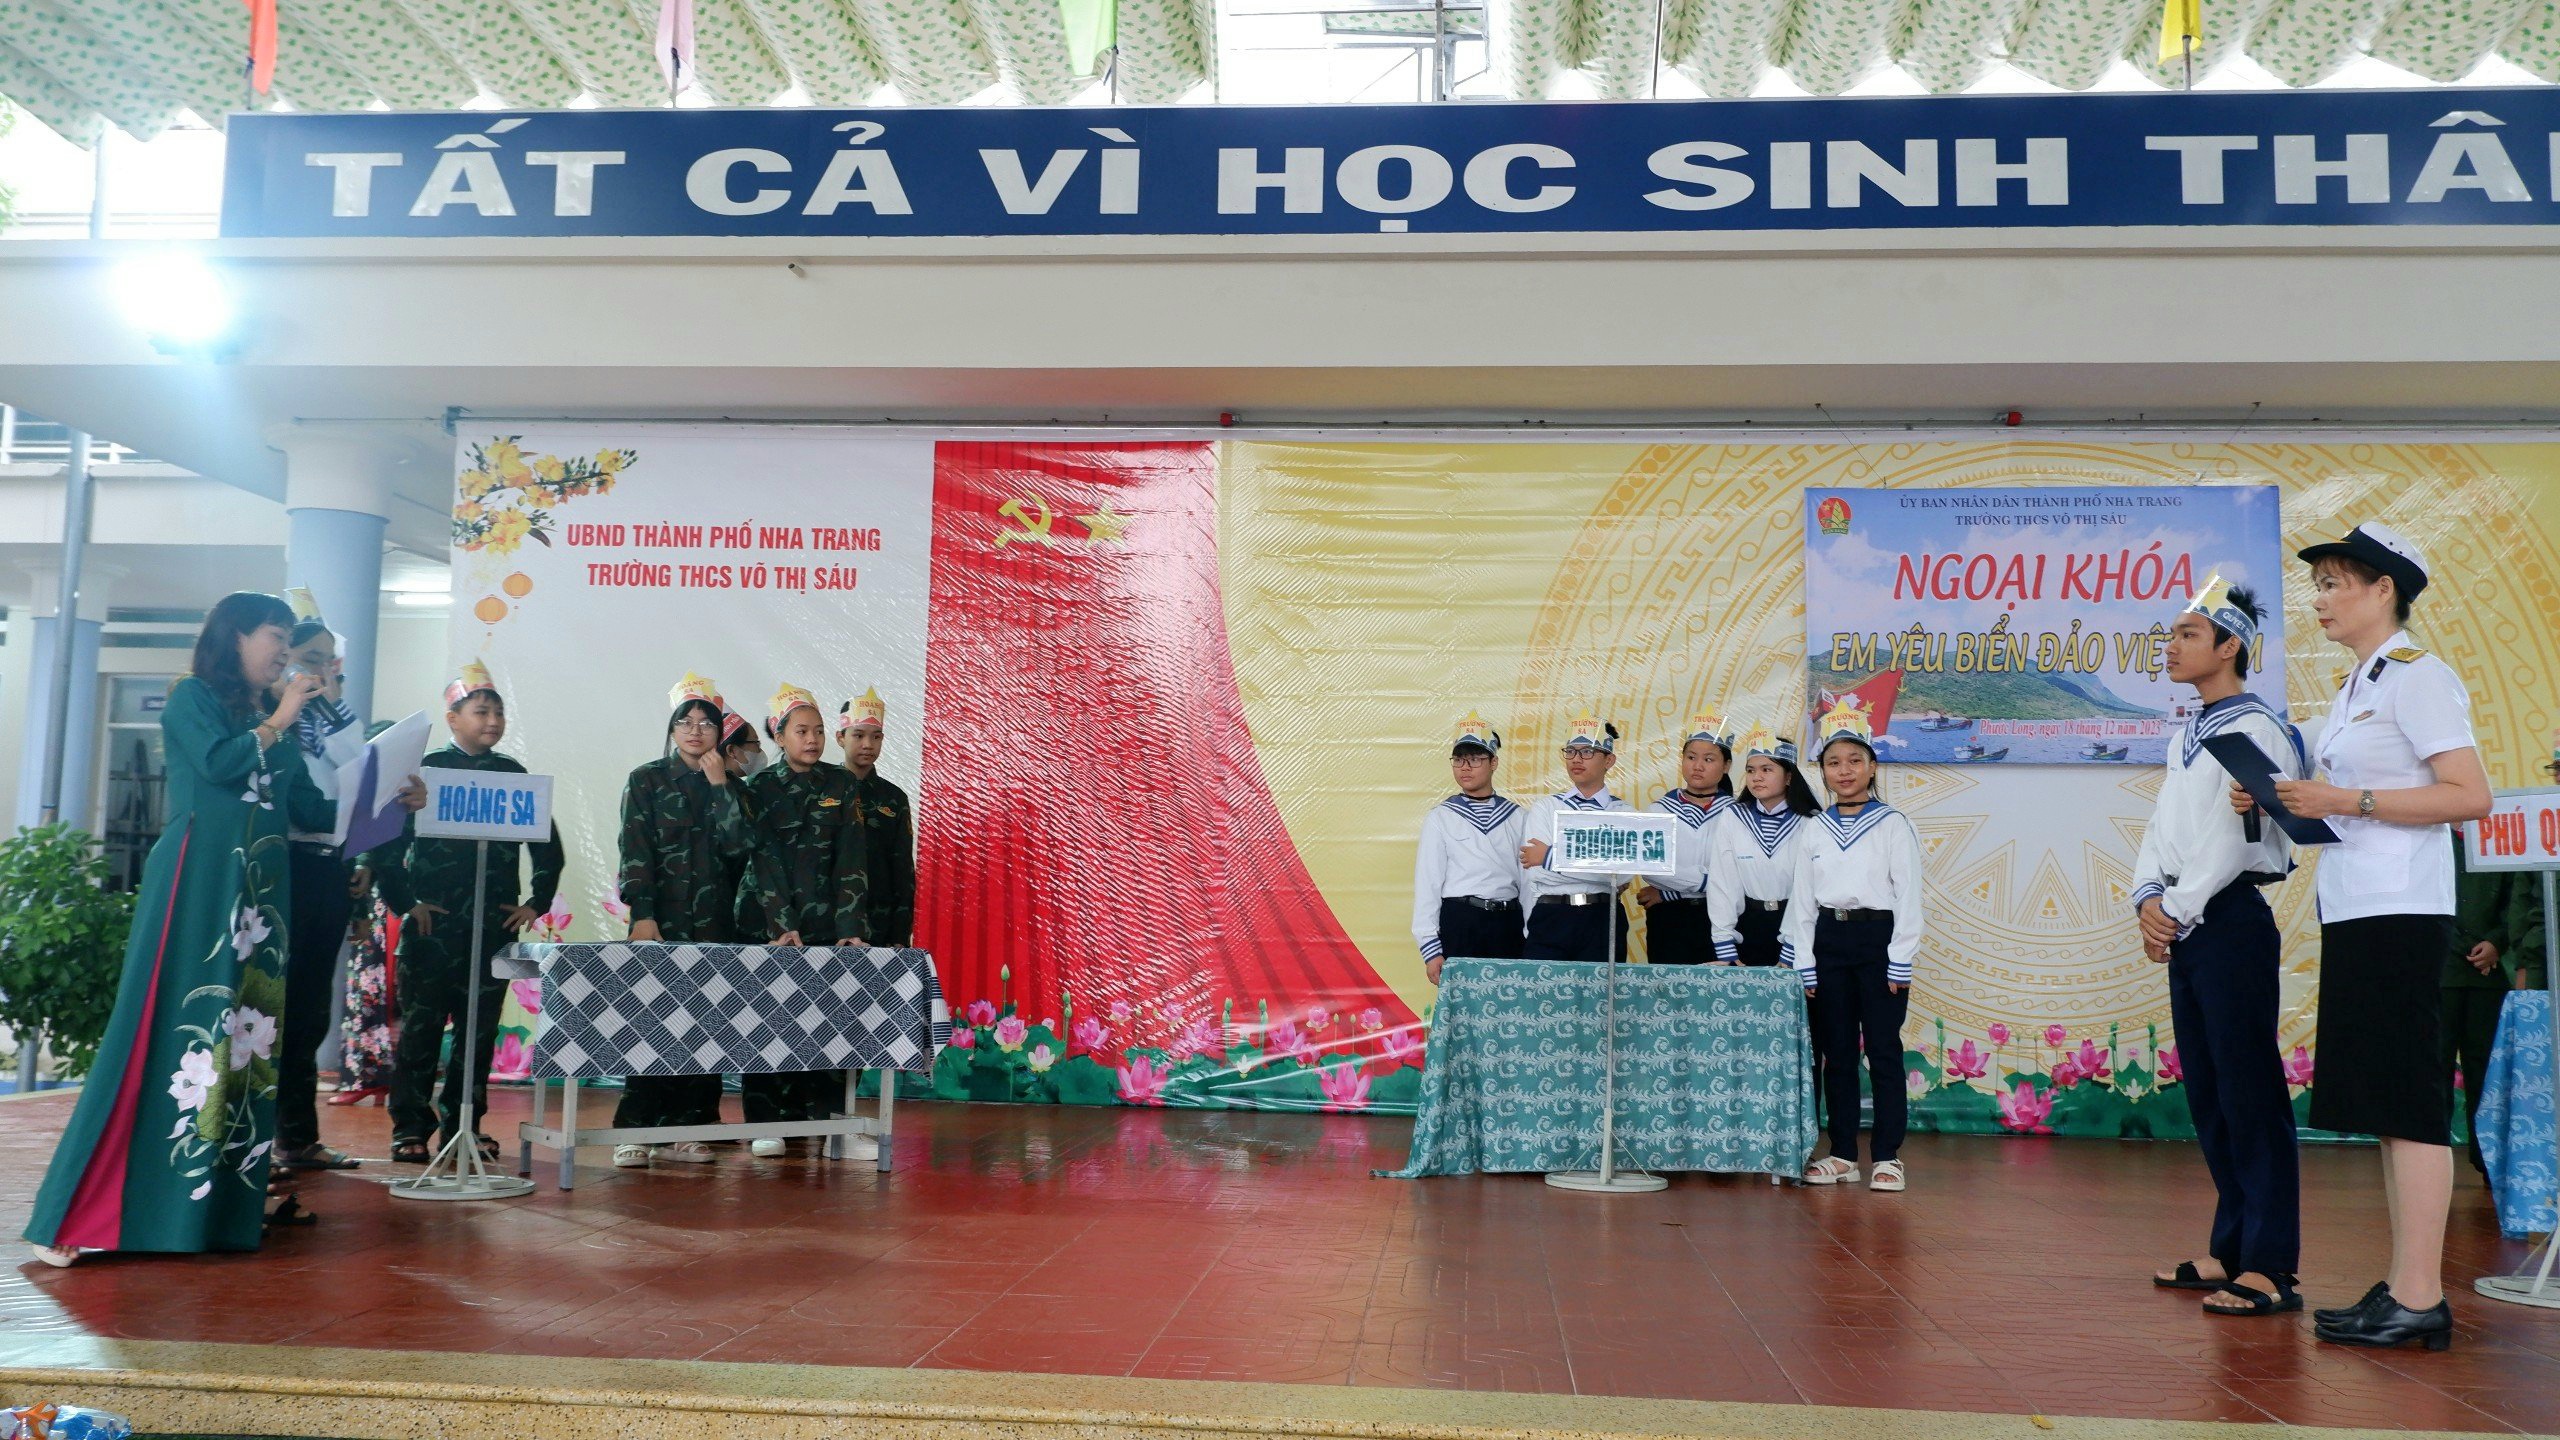 Ngoại khóa “Em yêu biển đảo Việt Nam”  năm học 2023 – 2024 của tổ Khoa học xã hội